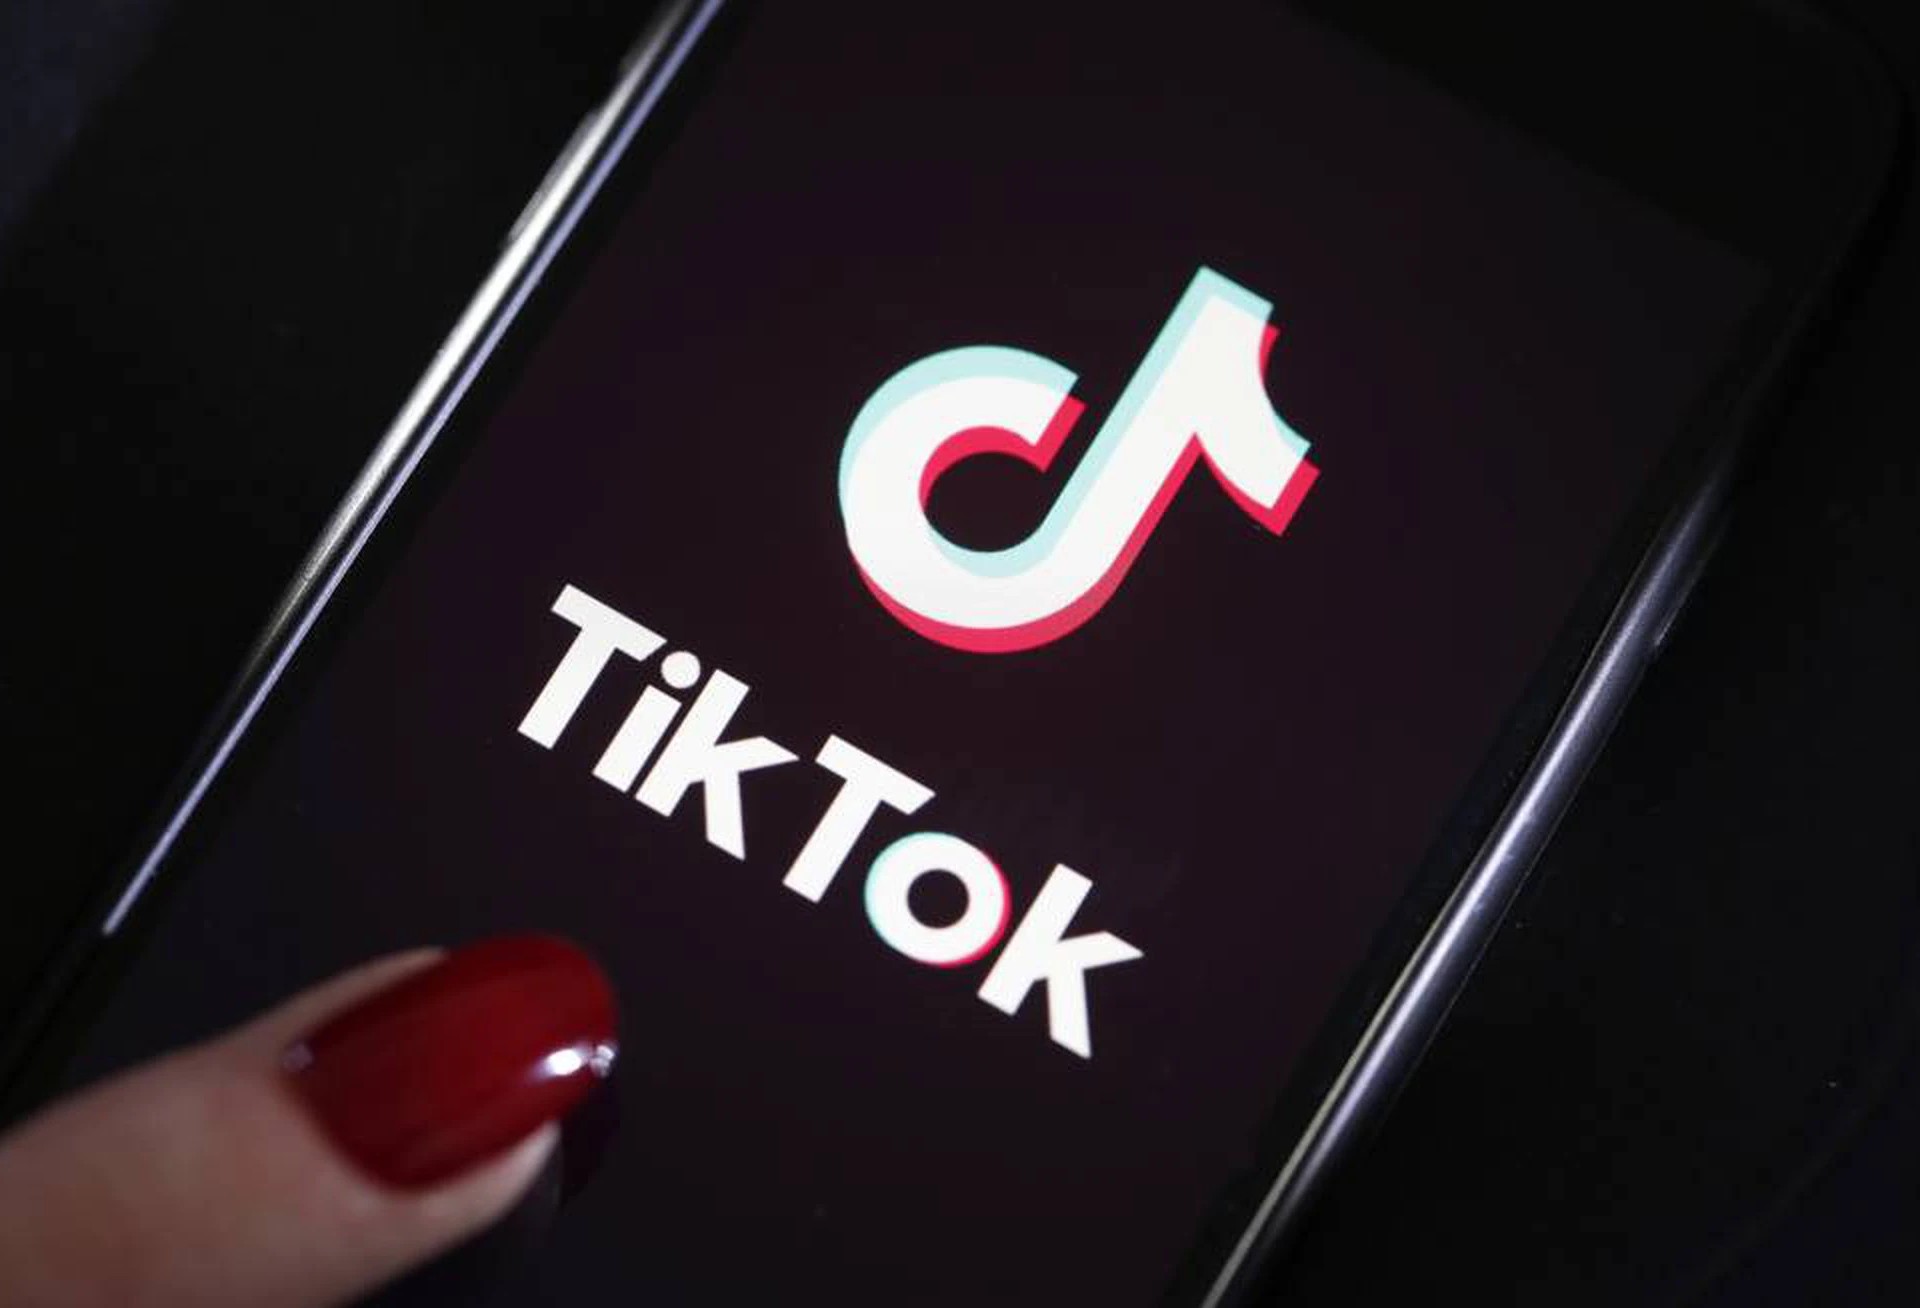 Como carregar vídeos do Tiktok no Chrome/Android/iOS?